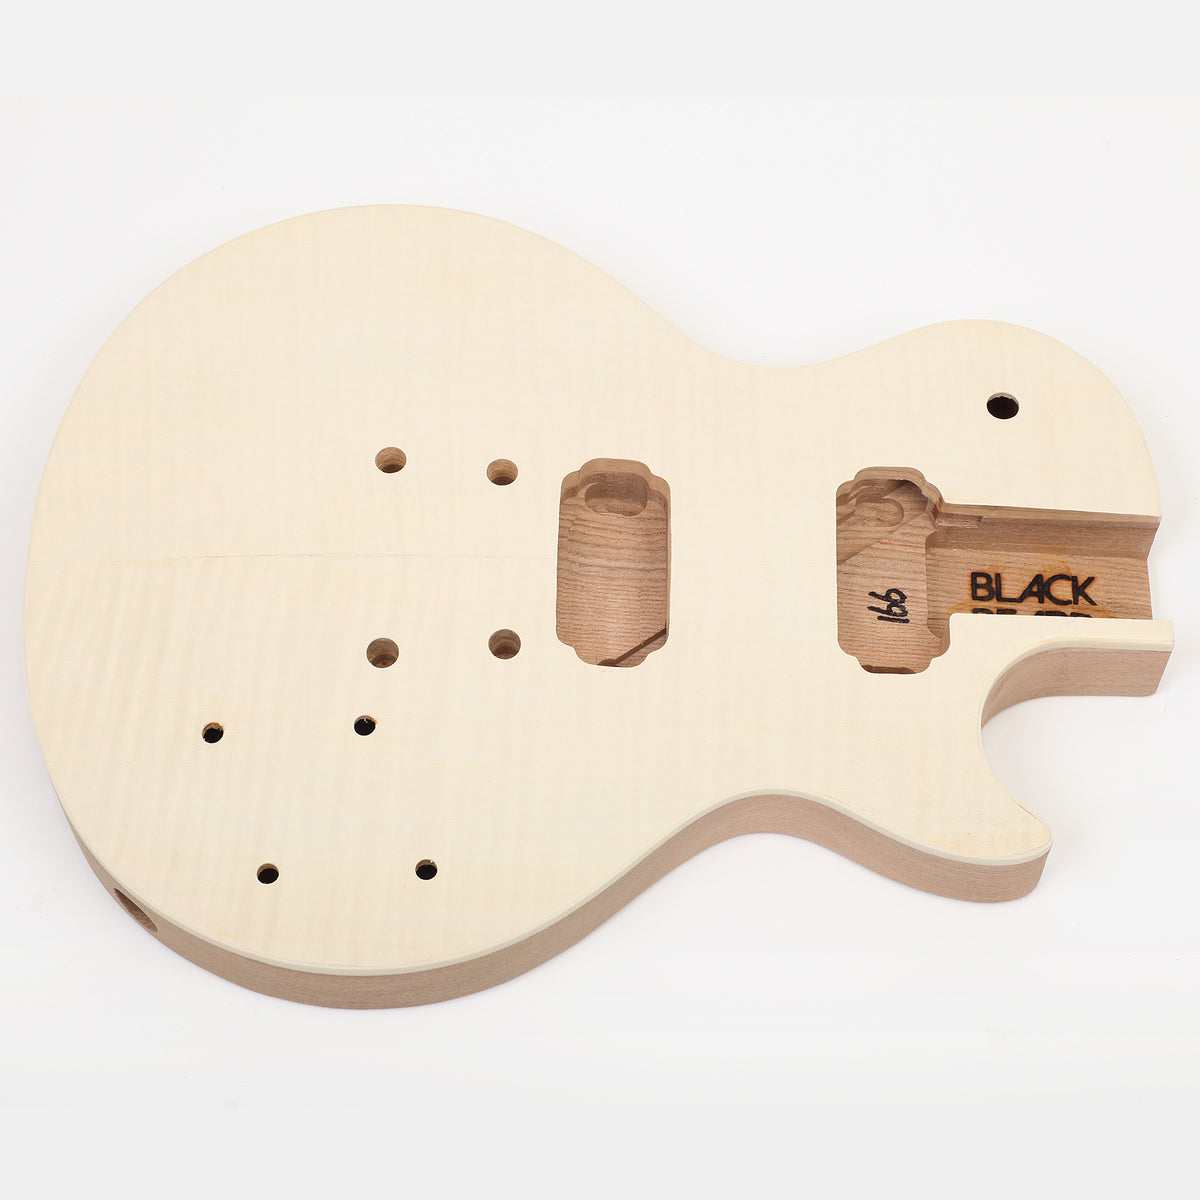 Les Paul Set-In Neck DIY Guitar Body Front